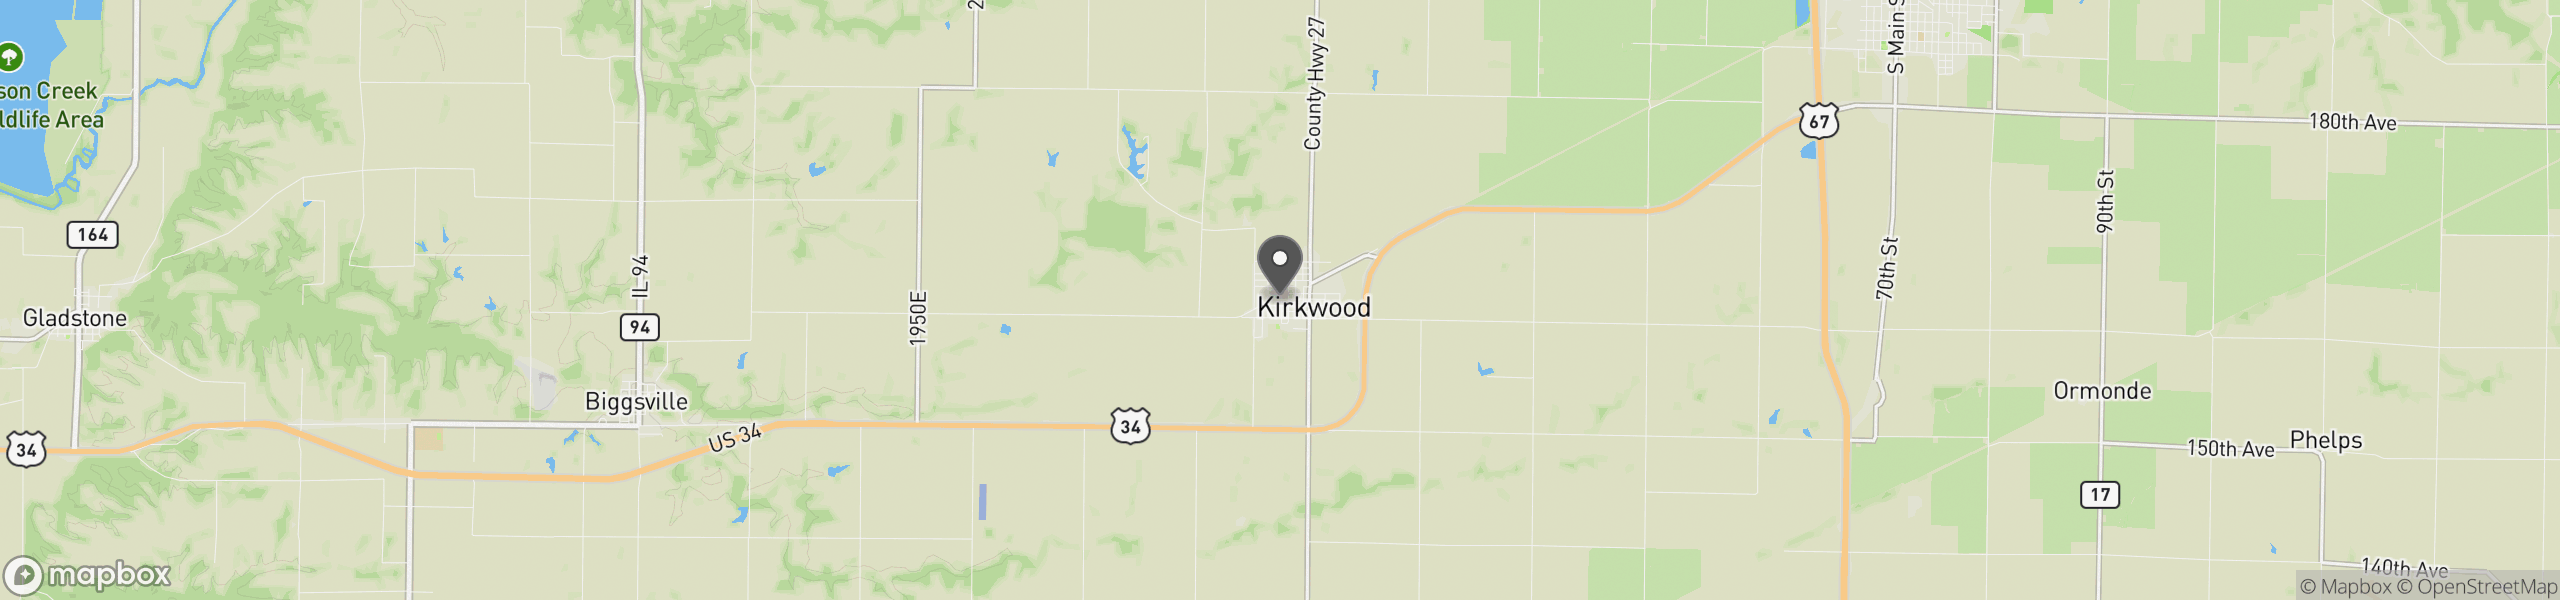 Kirkwood, IL